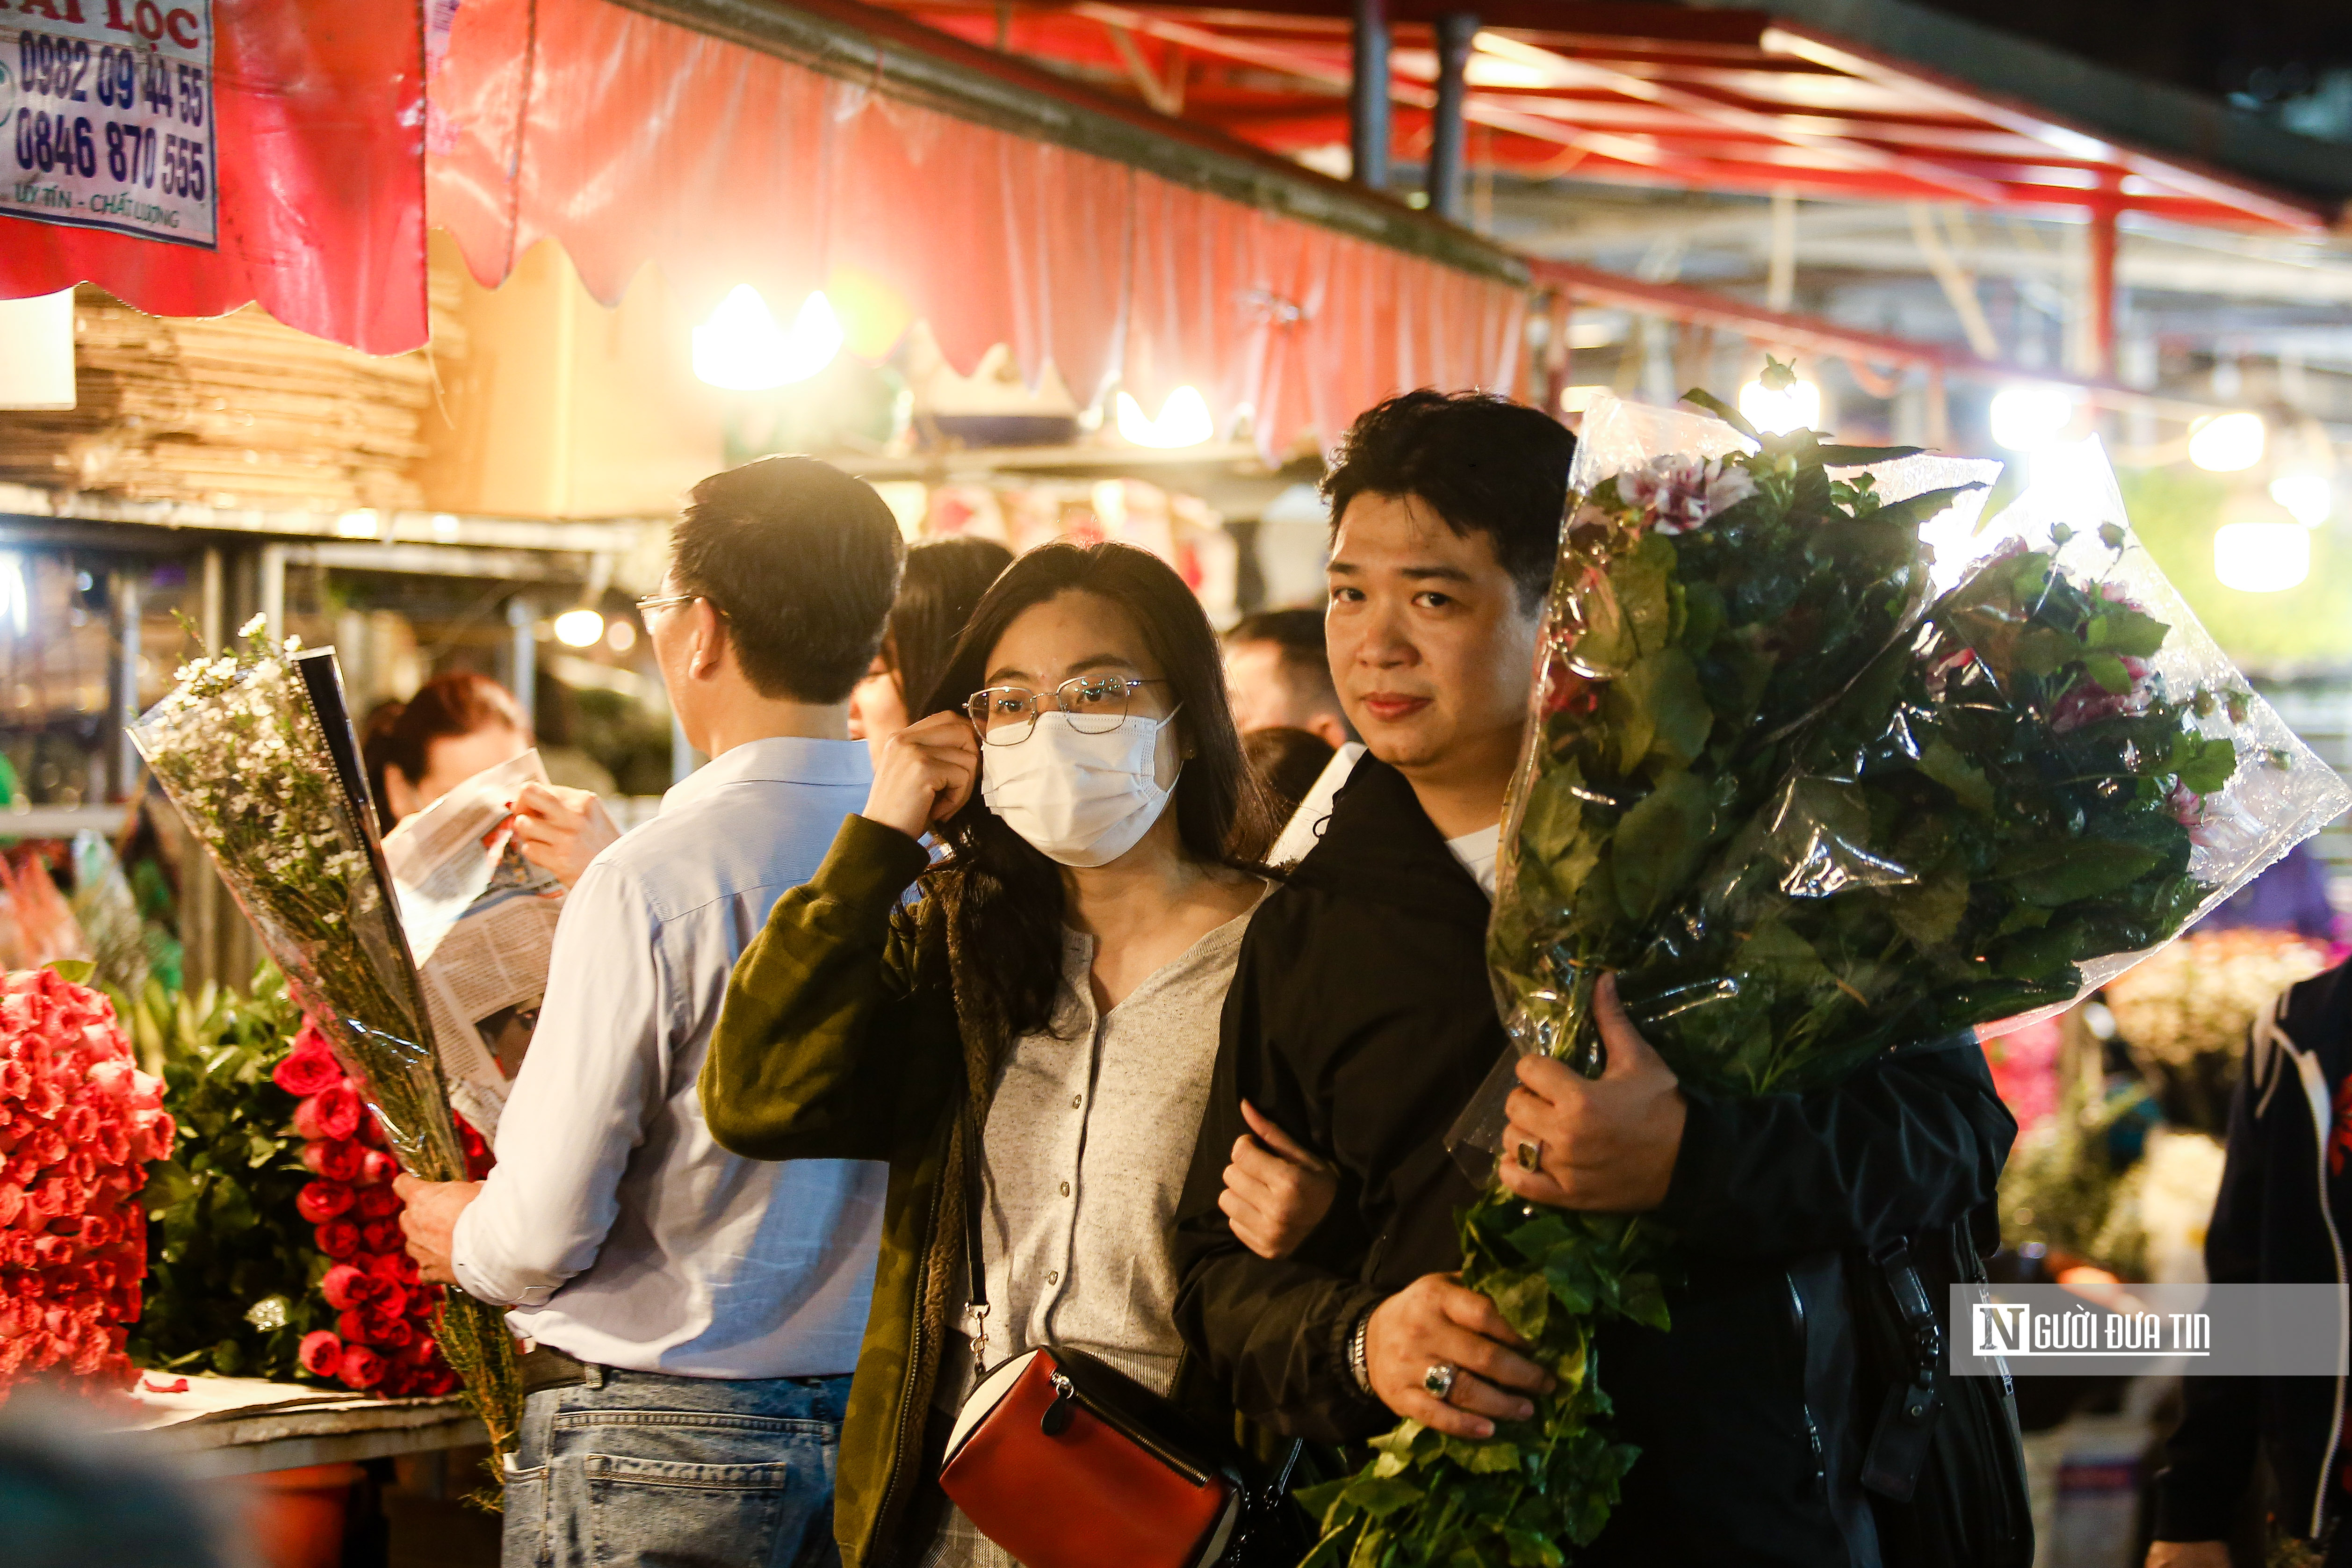 Dân sinh - Khung cảnh tấp nập tại chợ hoa Quảng An ngày cận Tết (Hình 9).